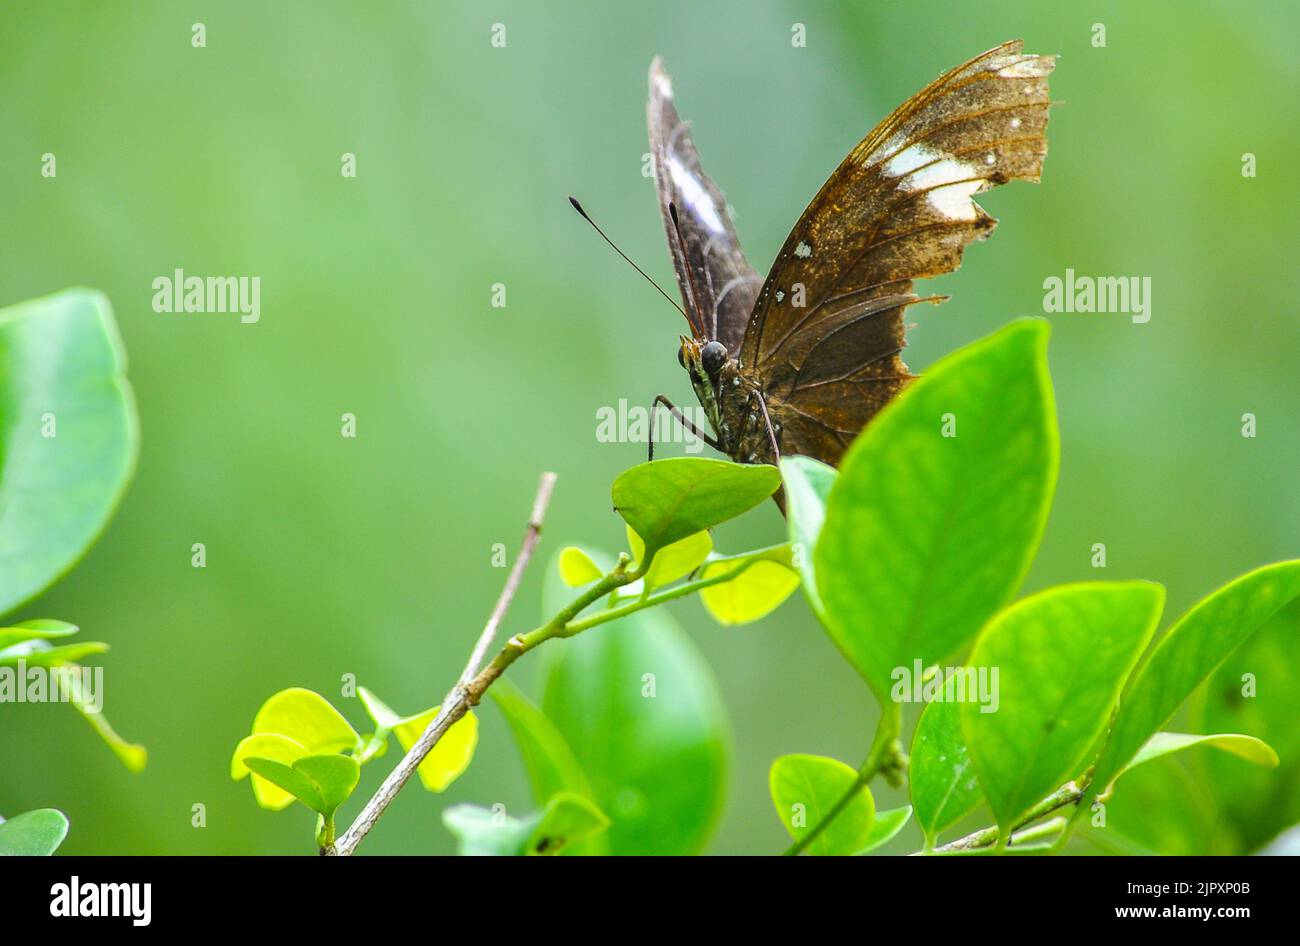 mariposa con alas rotas descansando sobre las hojas hasta que vuela al siguiente destino Foto de stock